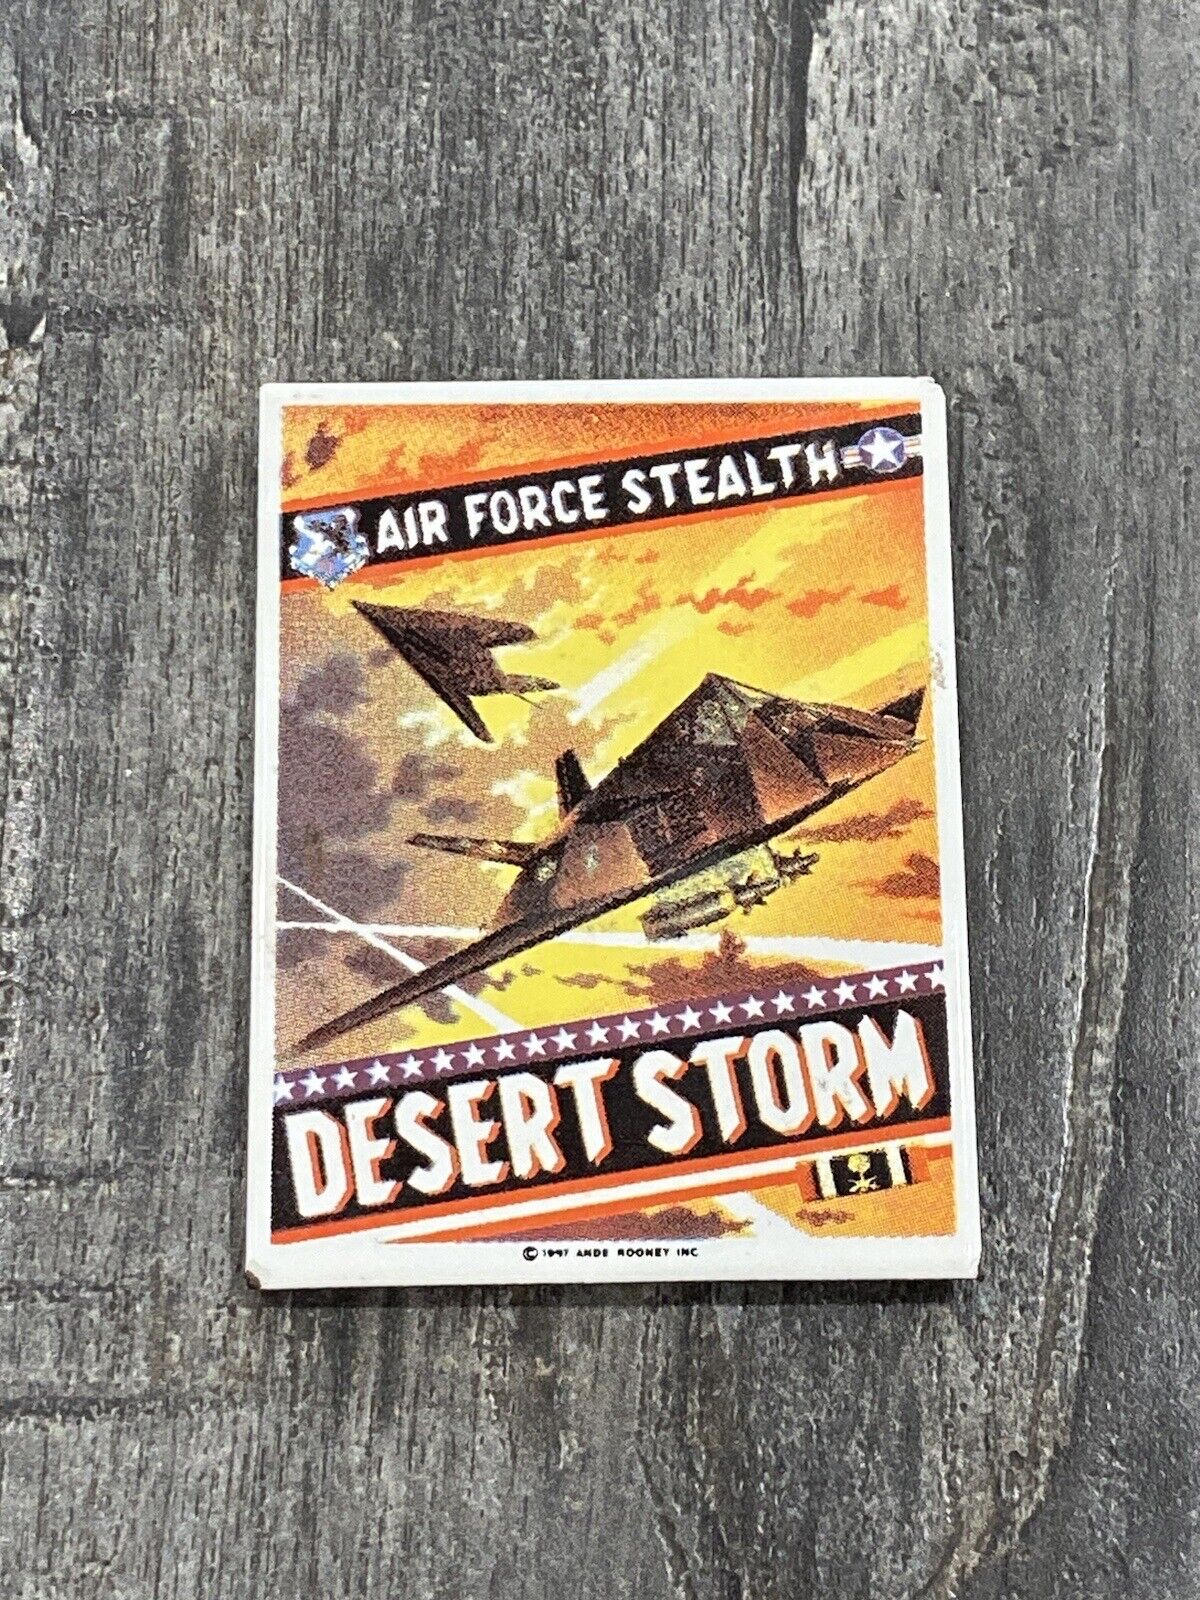 Desert Storm Air Force Stealth PORCELAIN SIGN FRIDGE MAGNET ANDE ROONEY VTG